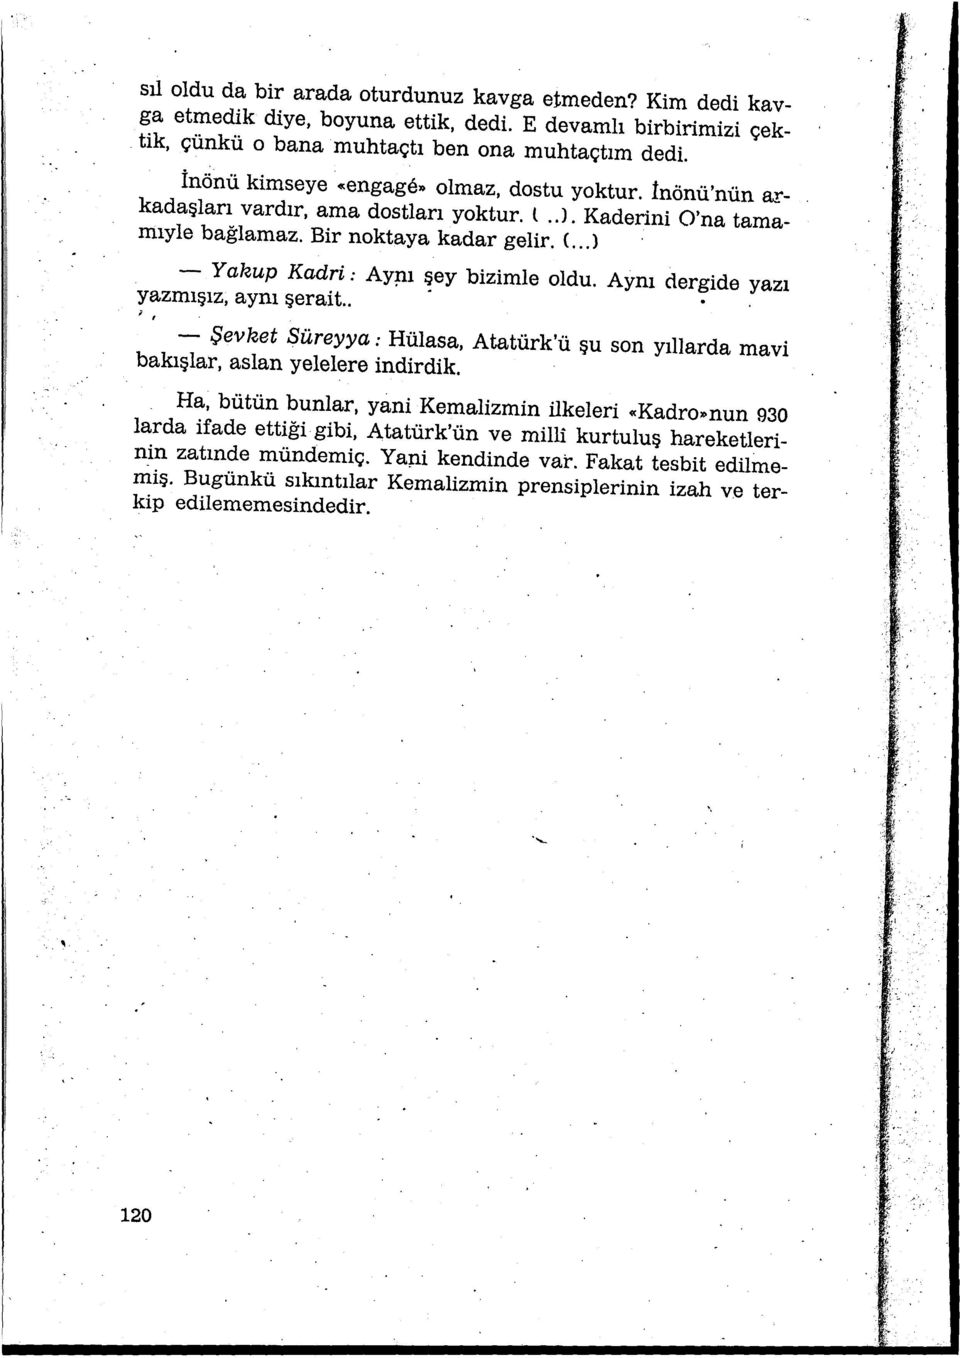 ı şey bizimle oldu. Aynı dergide yazı yazmışız, aynı şerait.. ; 1 - Şevket Süreyya: Hülasa, Atatürk'ü şu son yıllarda mavi bakışlar, aslan yelelere indirdik.